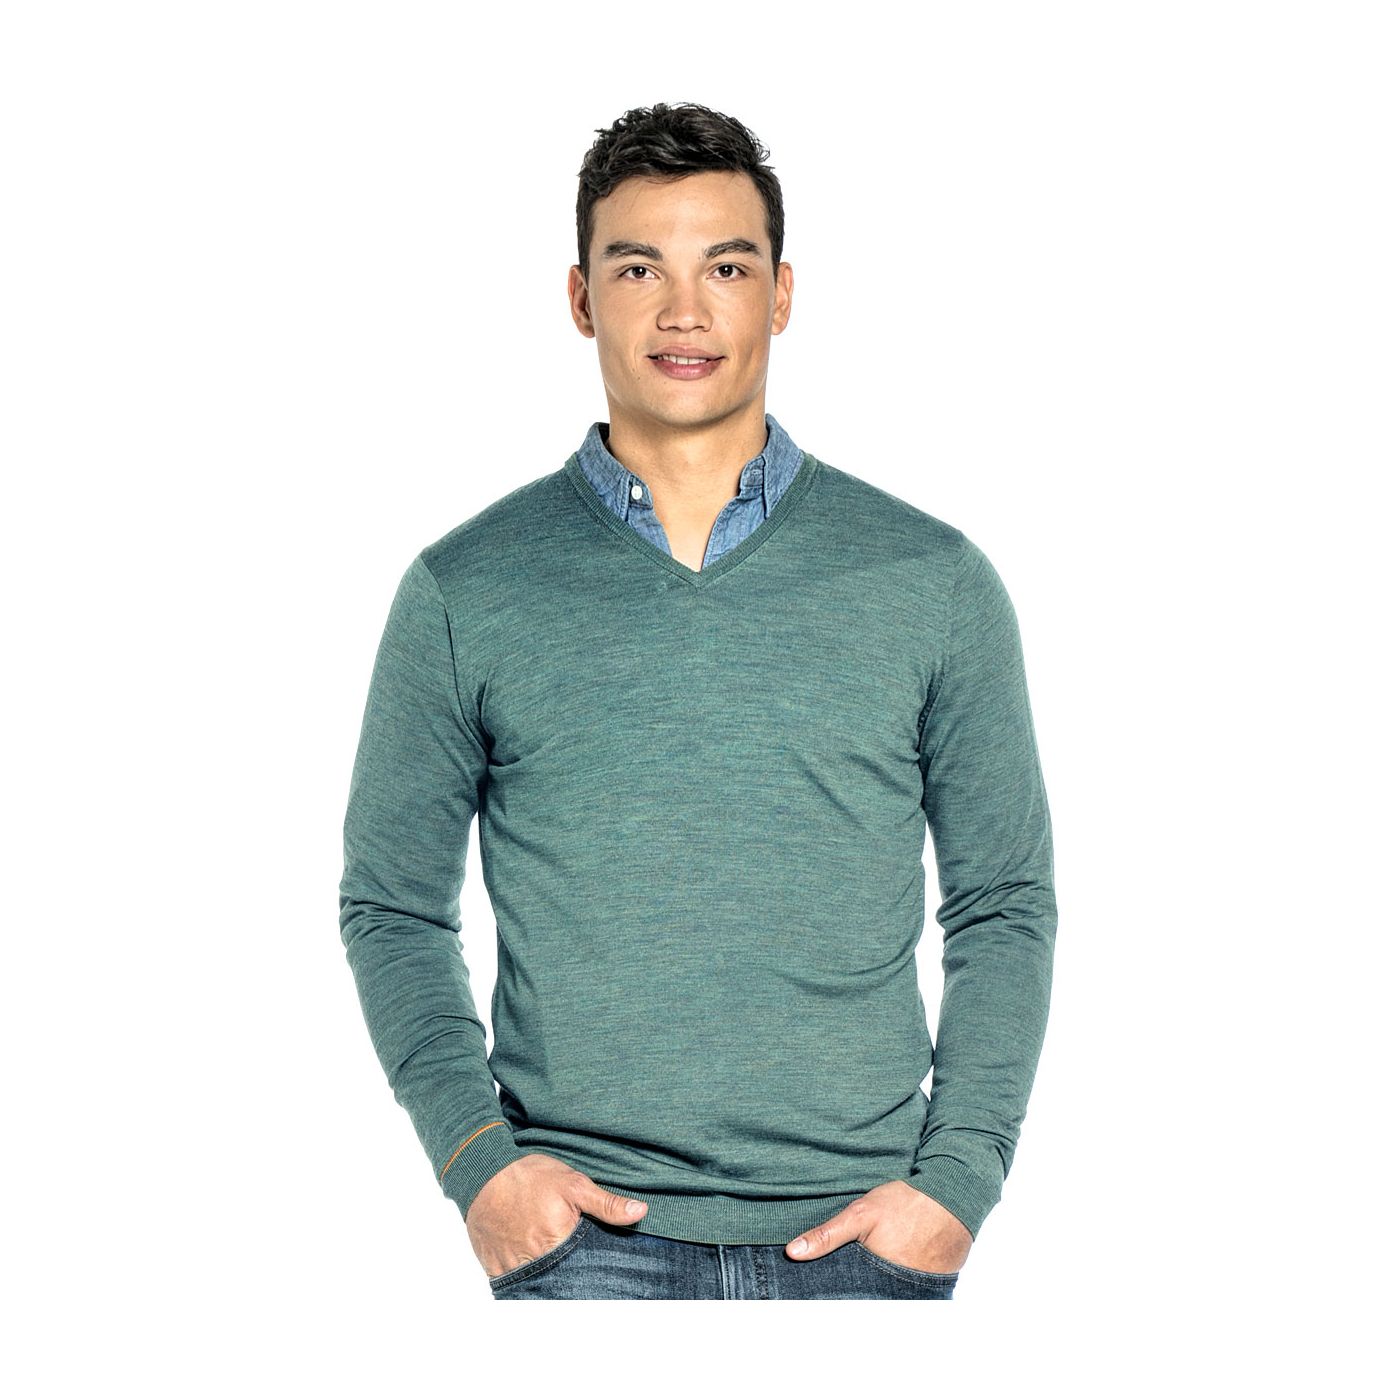 Extra long V Neck sweater for men made of Merino wool in Light green